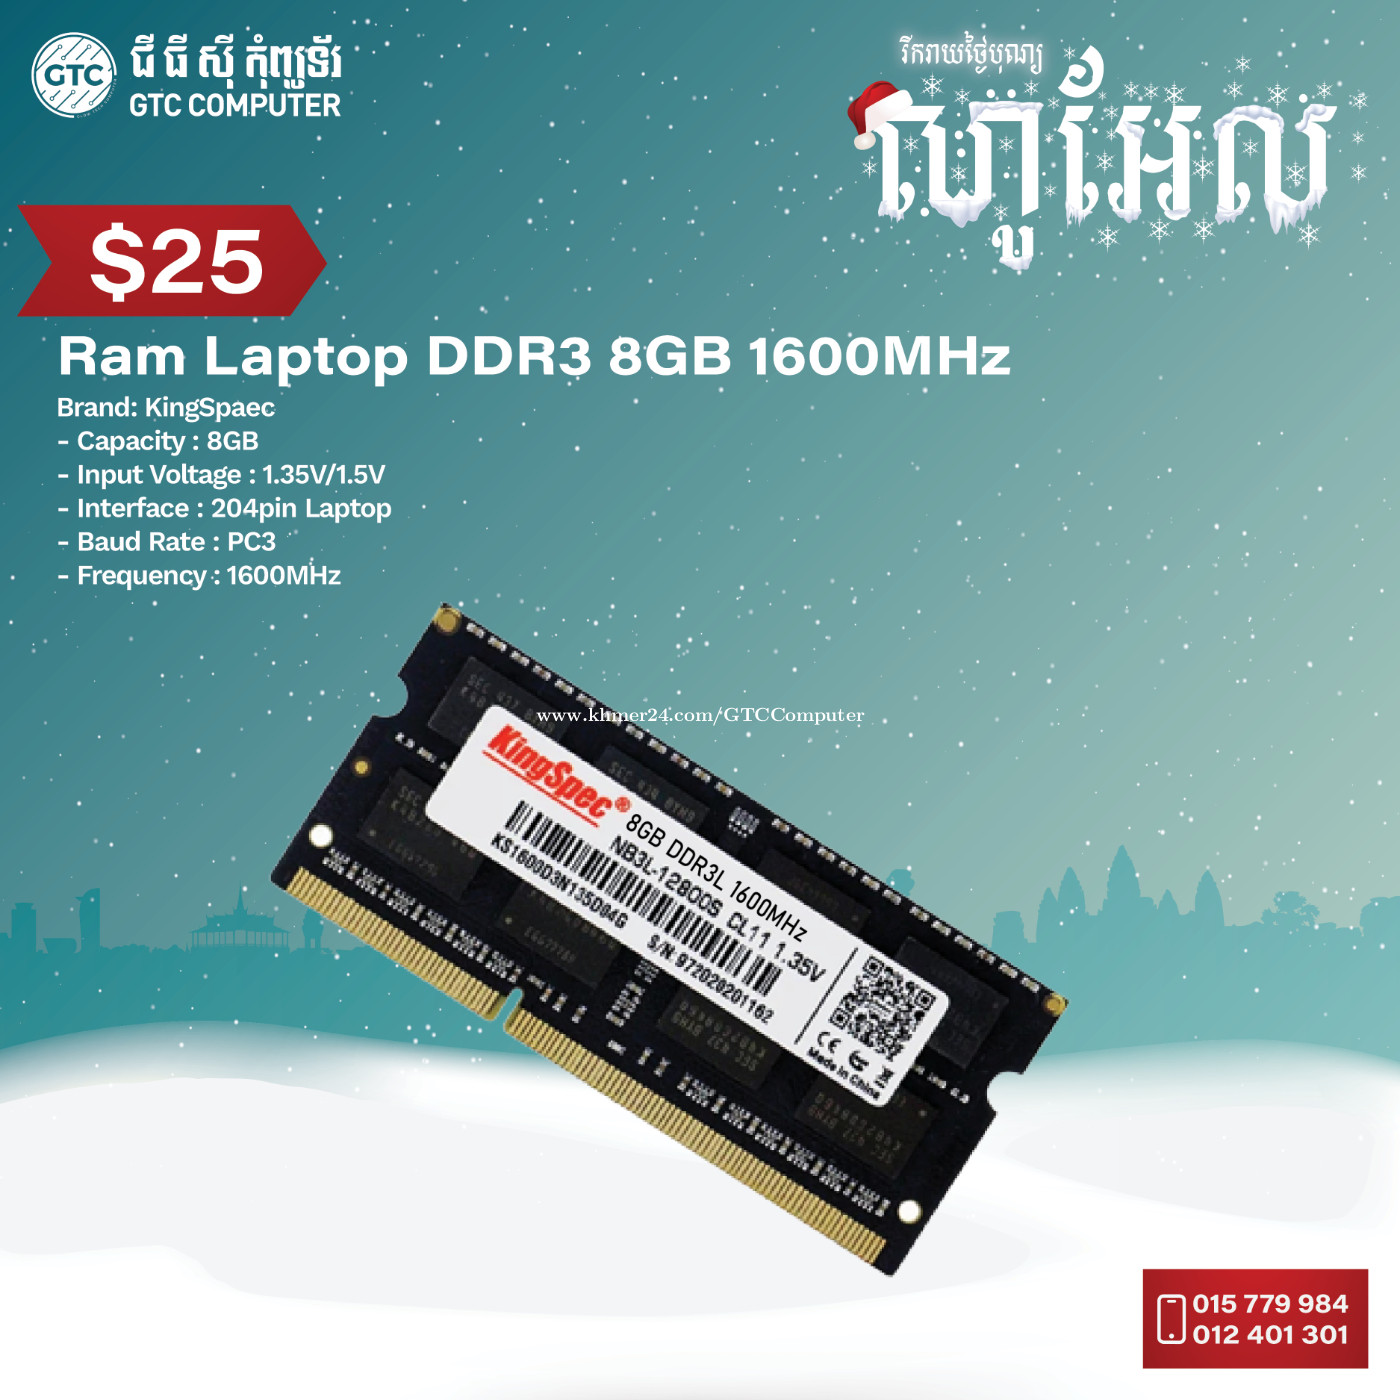 DDR3 RAM for Laptop - KingSpec